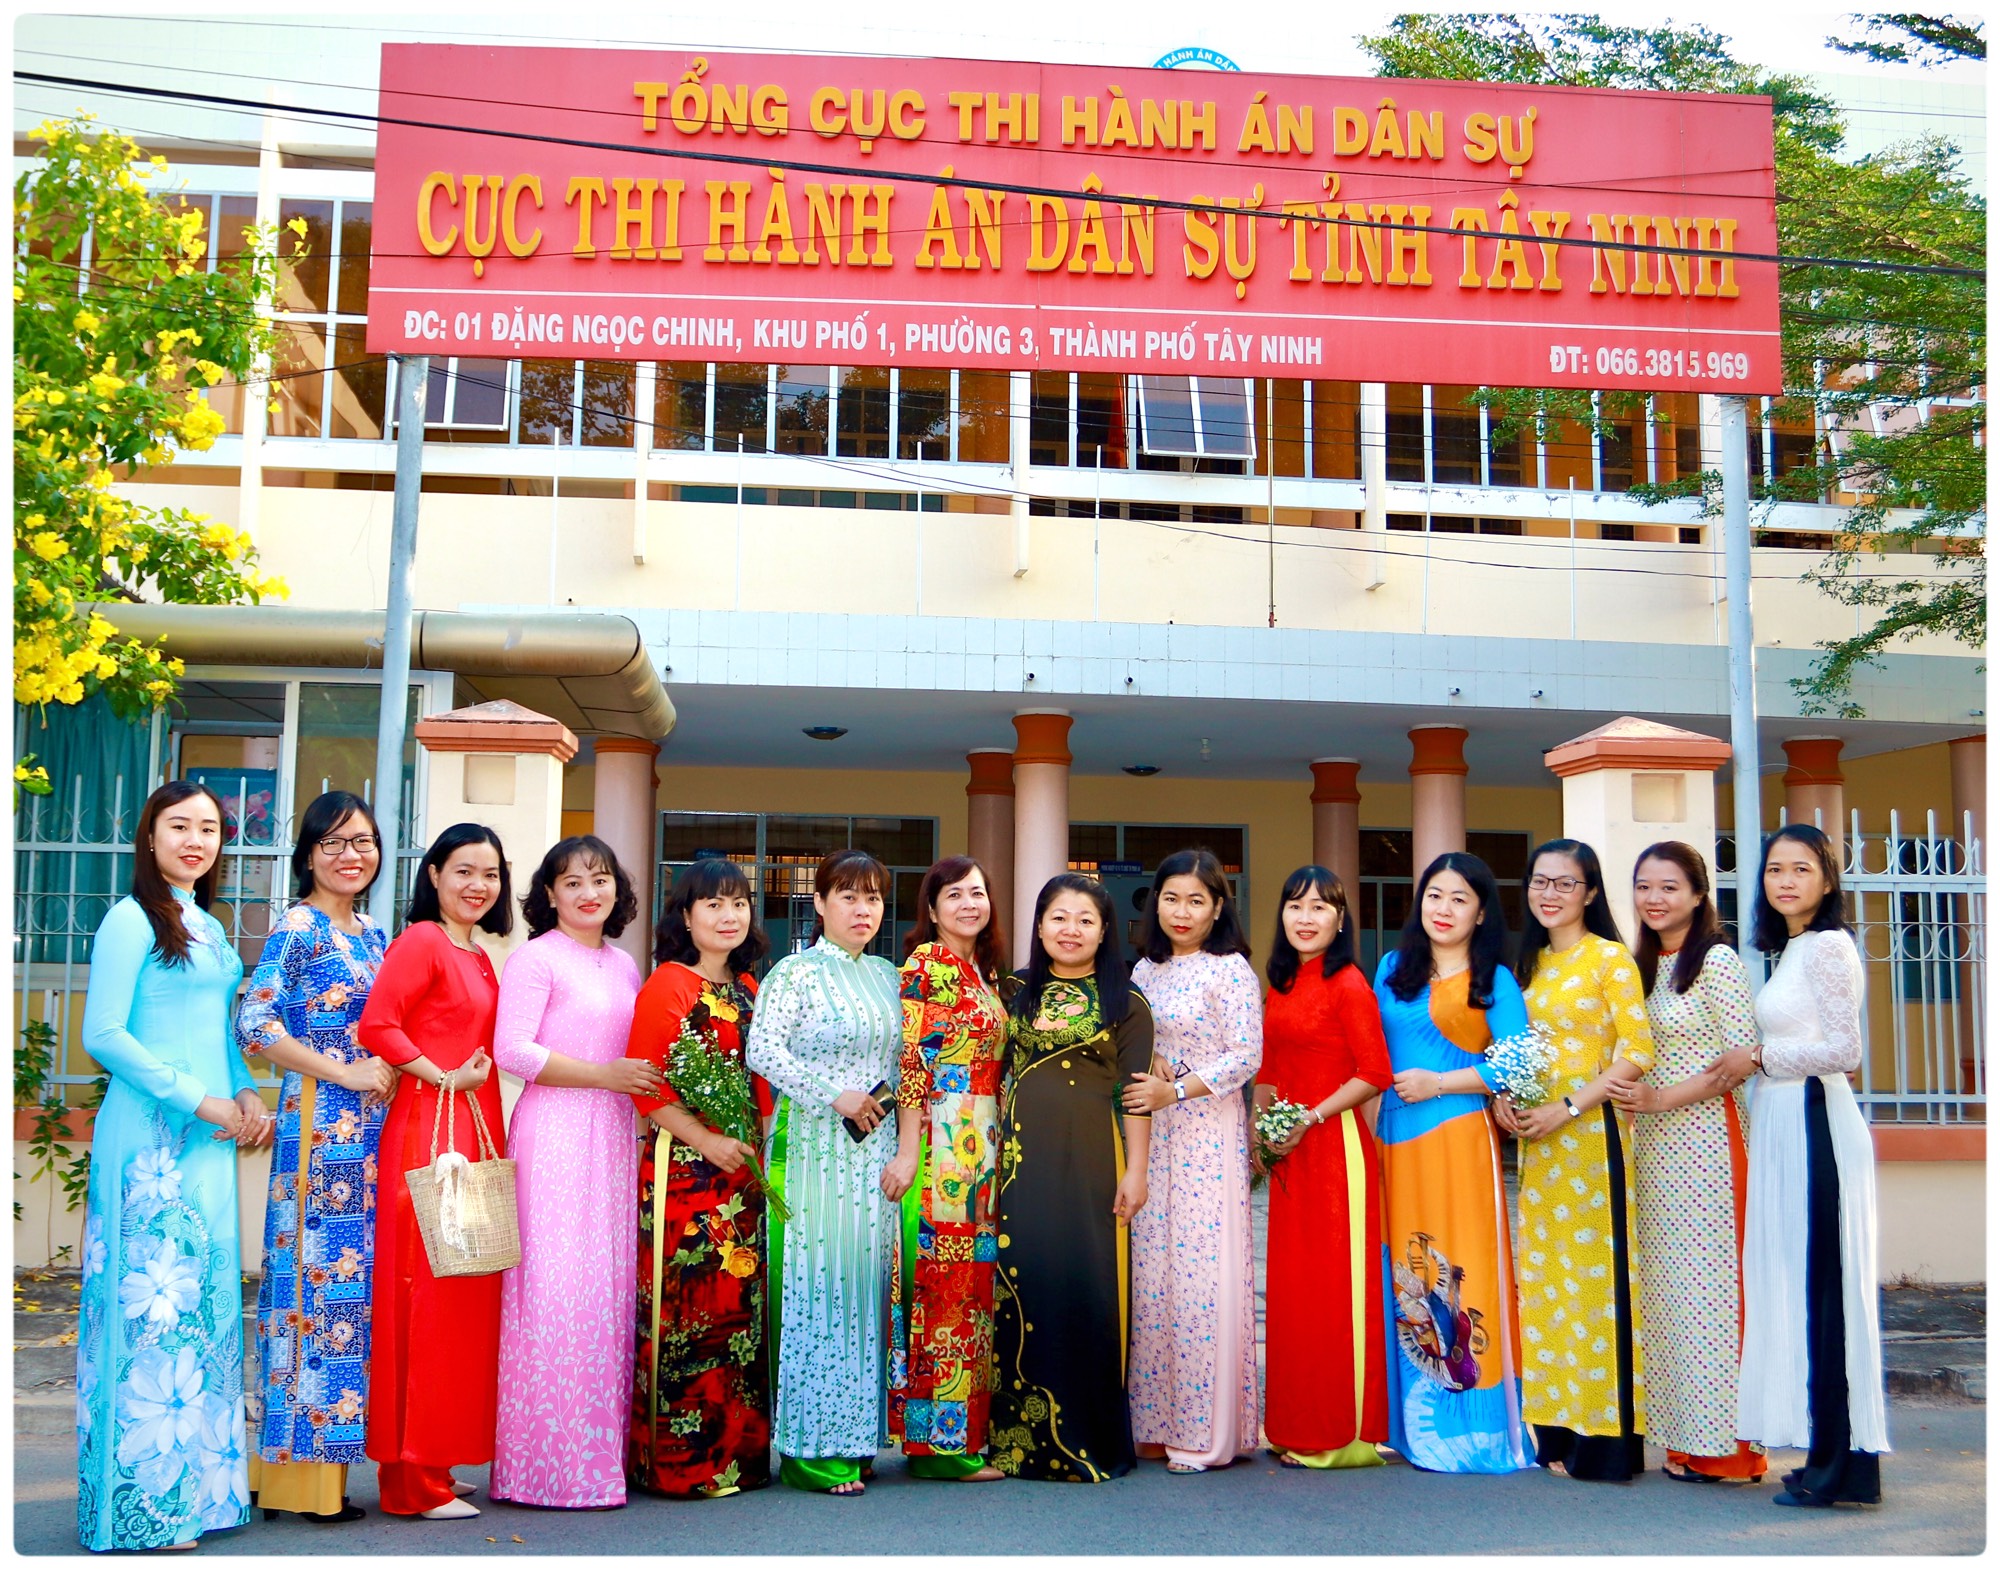 Cục Thi hành án dân sự (THADS) tỉnh Tây Ninh tổ chức hoạt động kỷ niệm Ngày Quốc tế Phụ nữ 08/3/2021 và 1981 năm khởi nghĩa Hai Bà Trưng